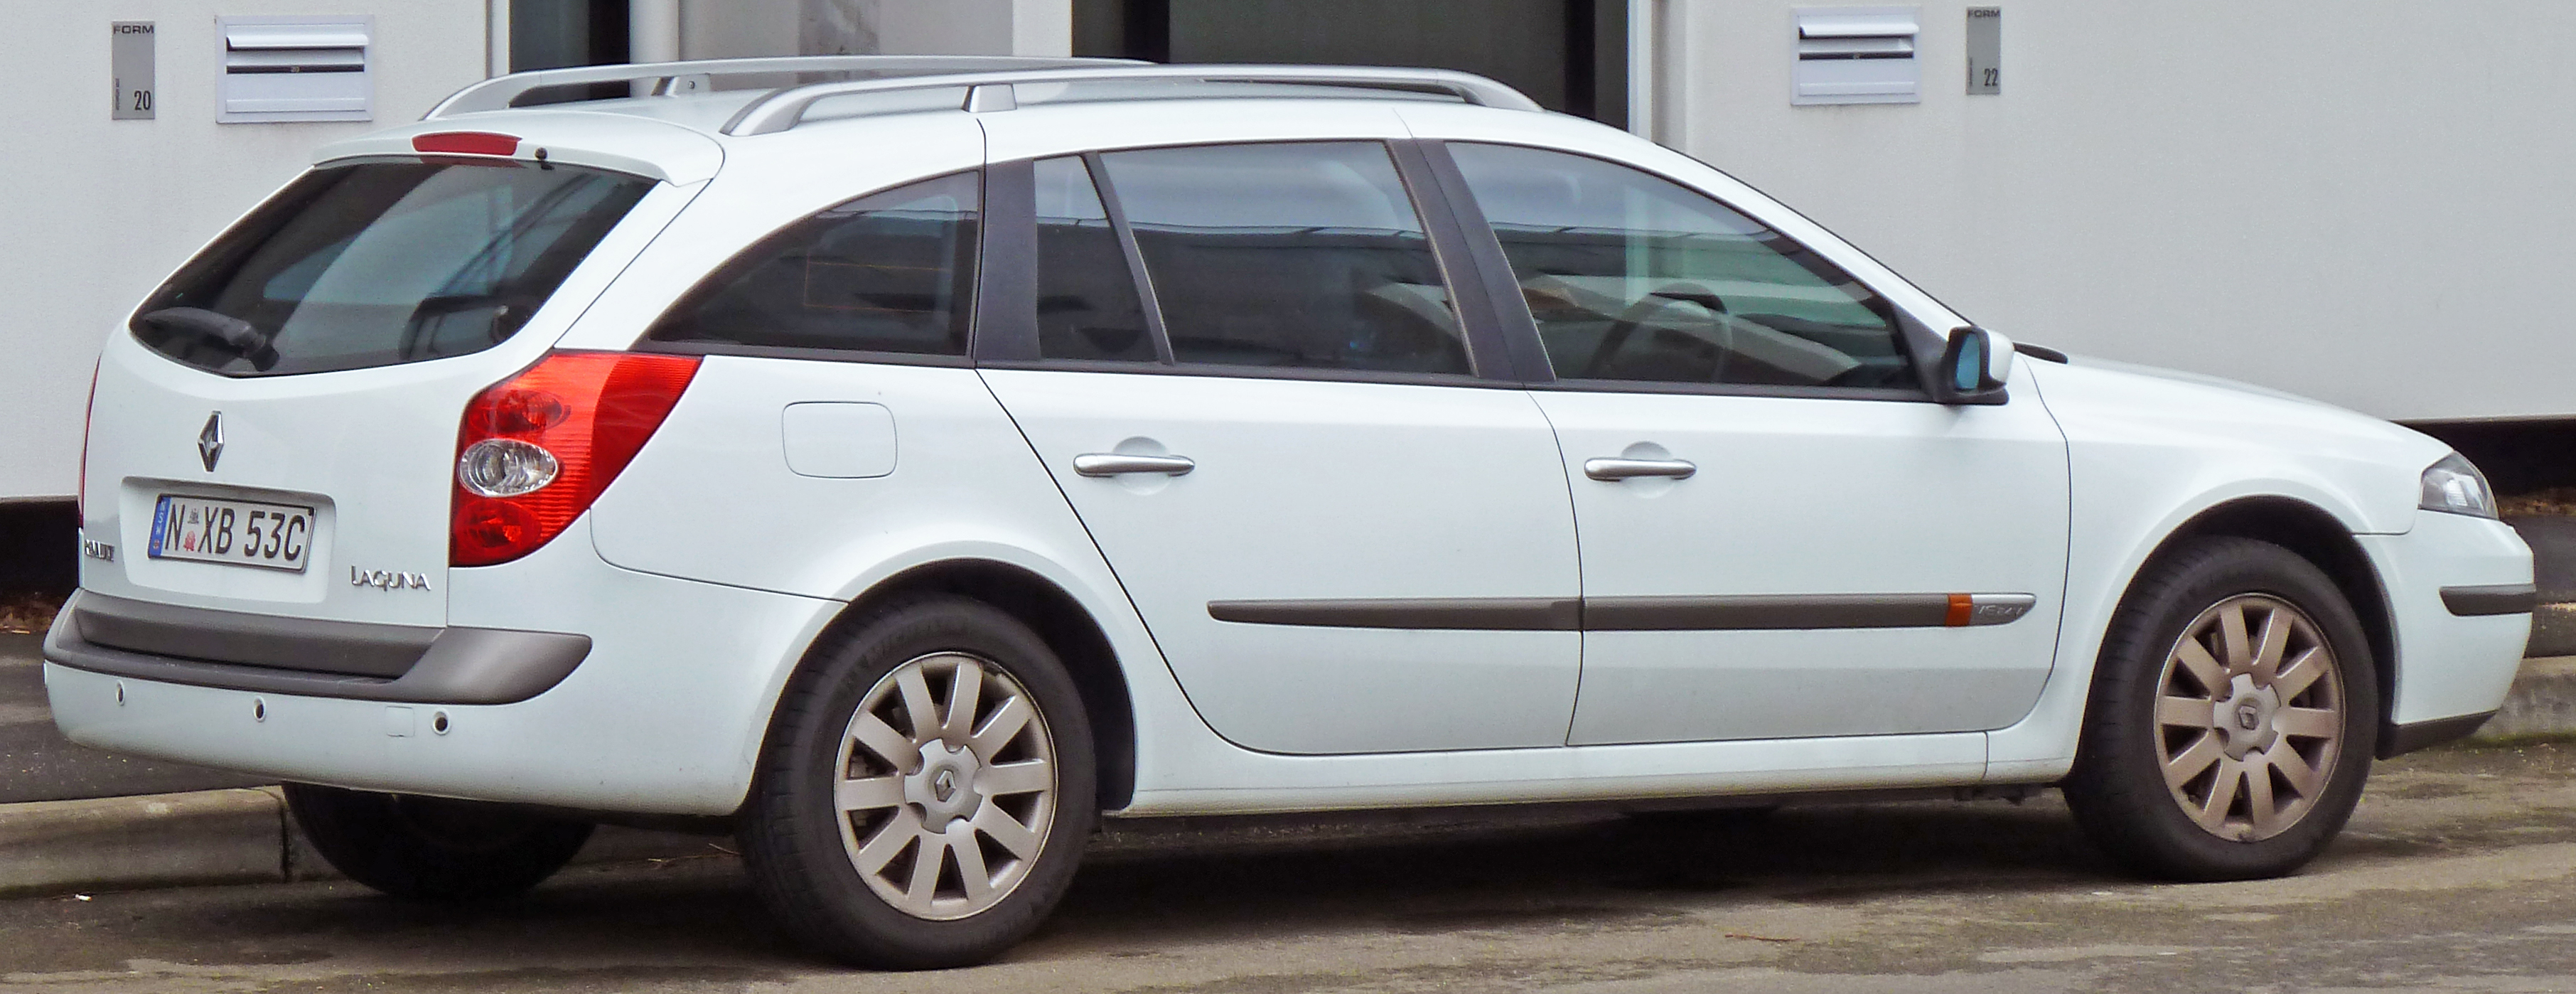 2002-2006 Renault Laguna II Privilege station wagon 01